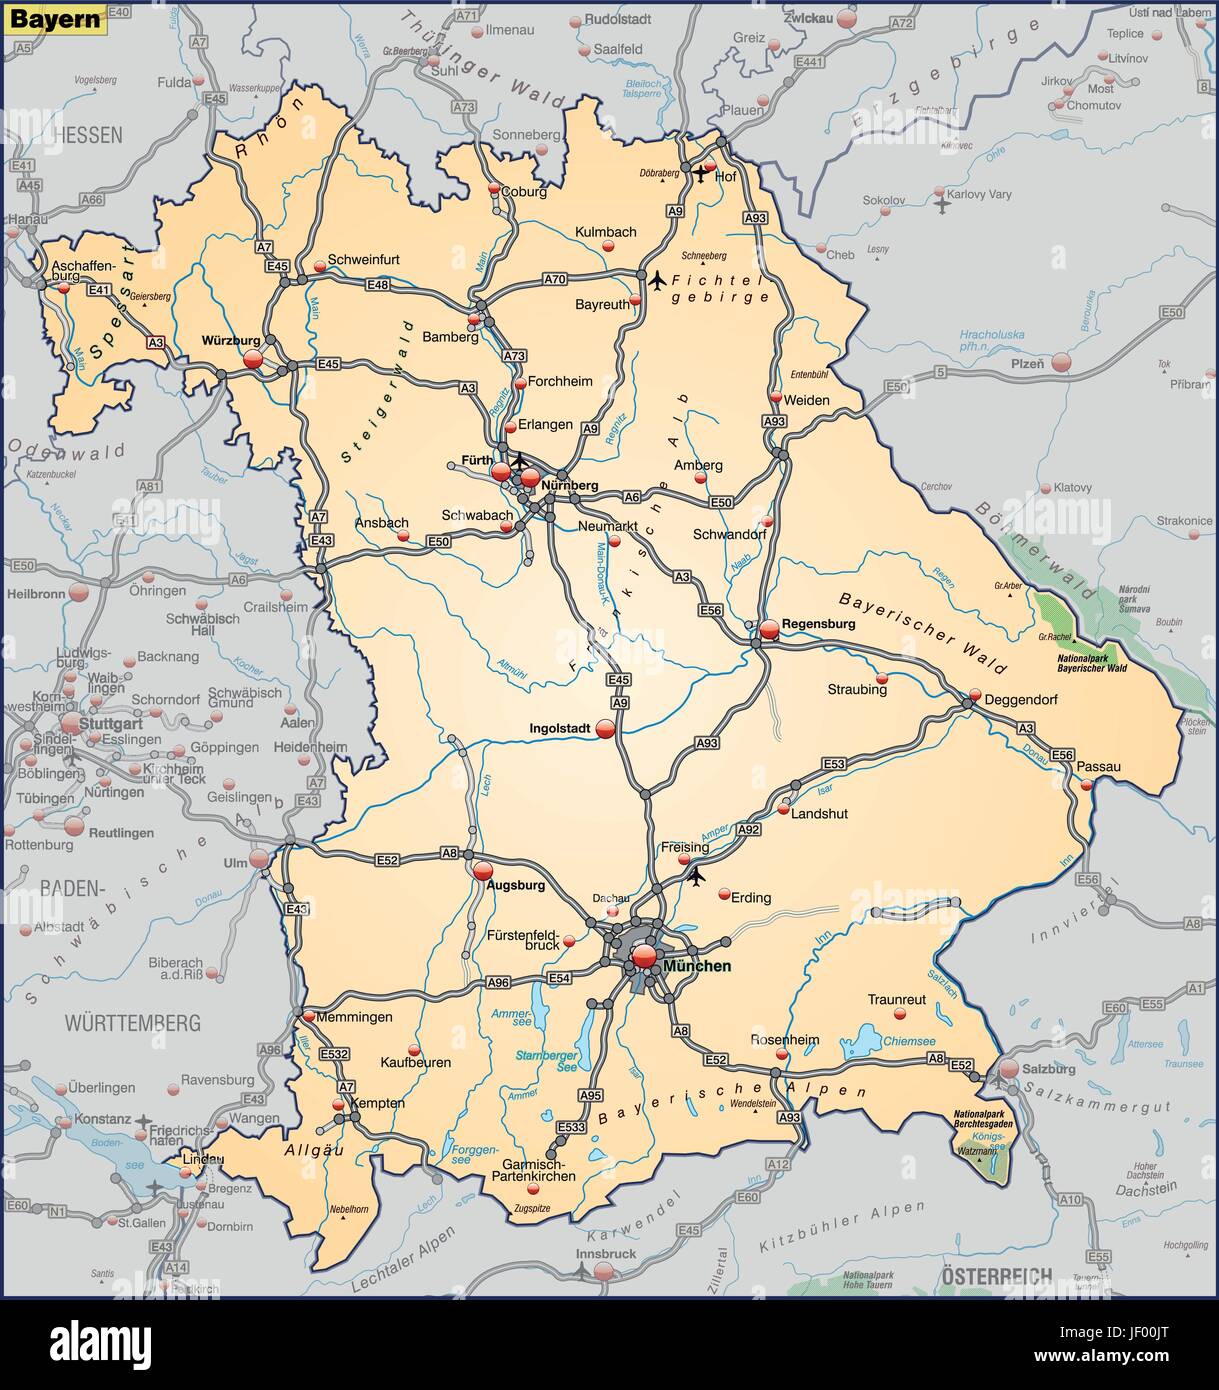 Verkehr, Transport, Bayern, Autobahn, Autobahn, Karte, Staat